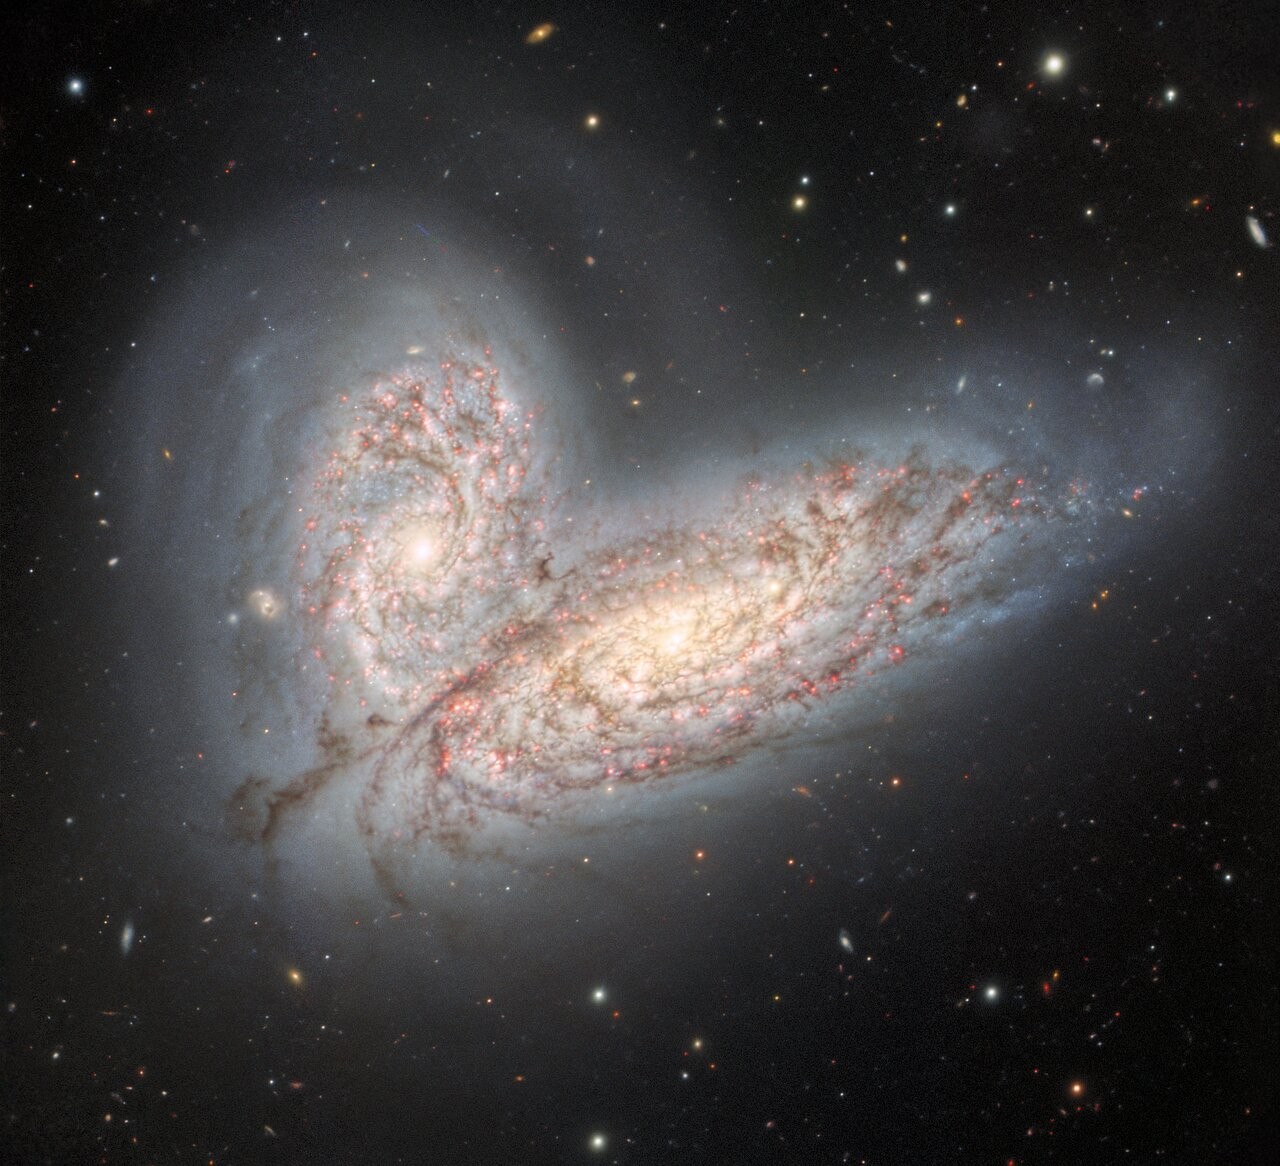 Par de galáxias espirais, NGC 4568 (em baixo) e a NGC 4567 (em cima), em interação (Foto: NOIRLab)